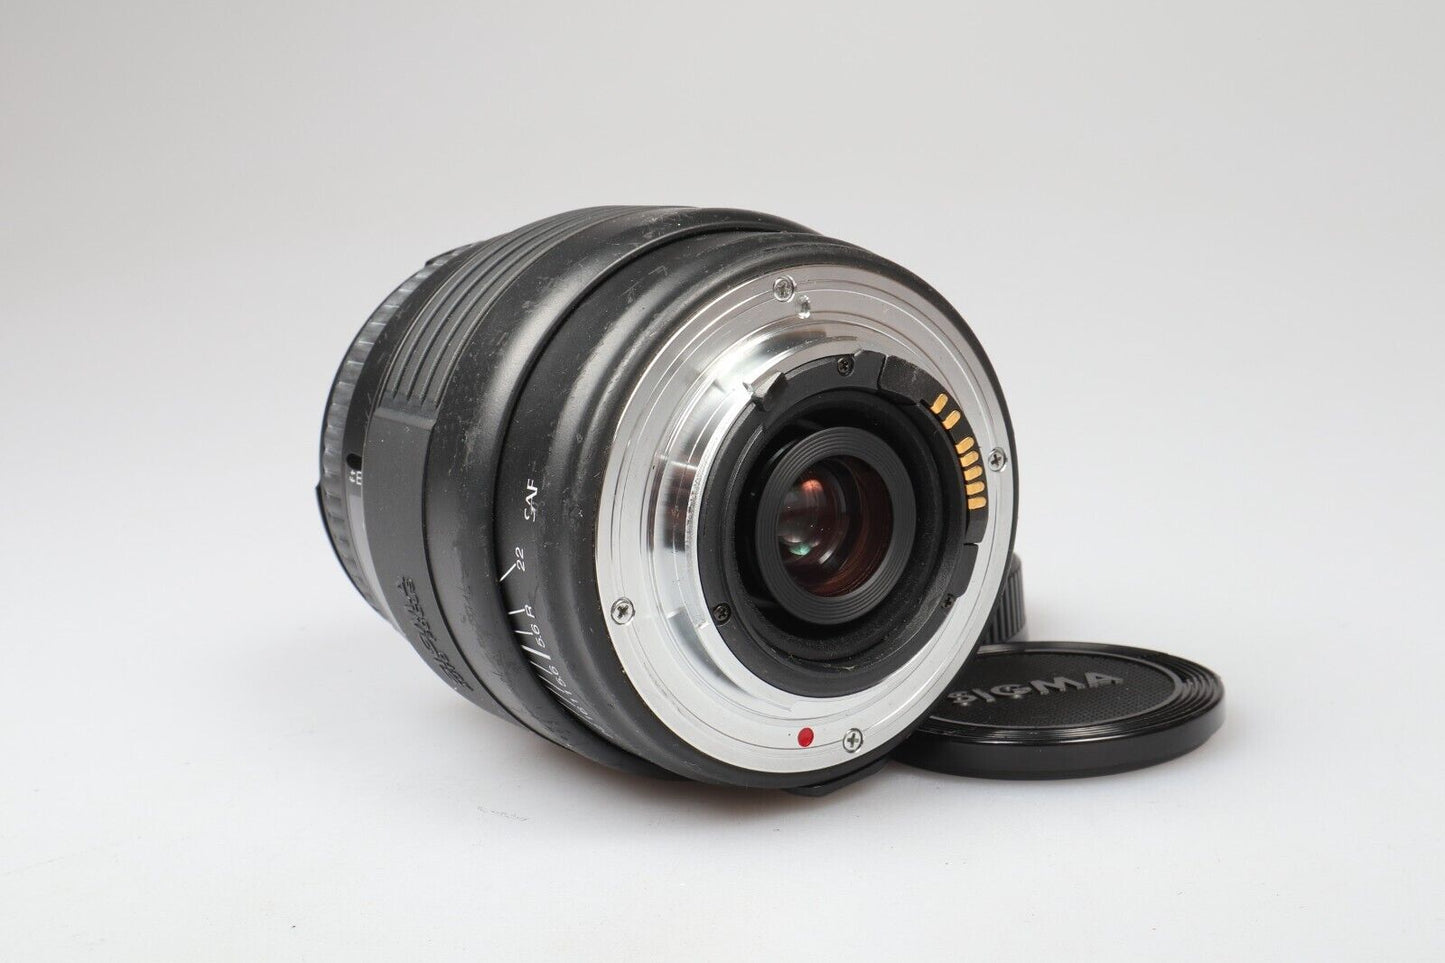 Sigma UC-zoomlens | 70-210 mm f4-5.6 | SA-montage 